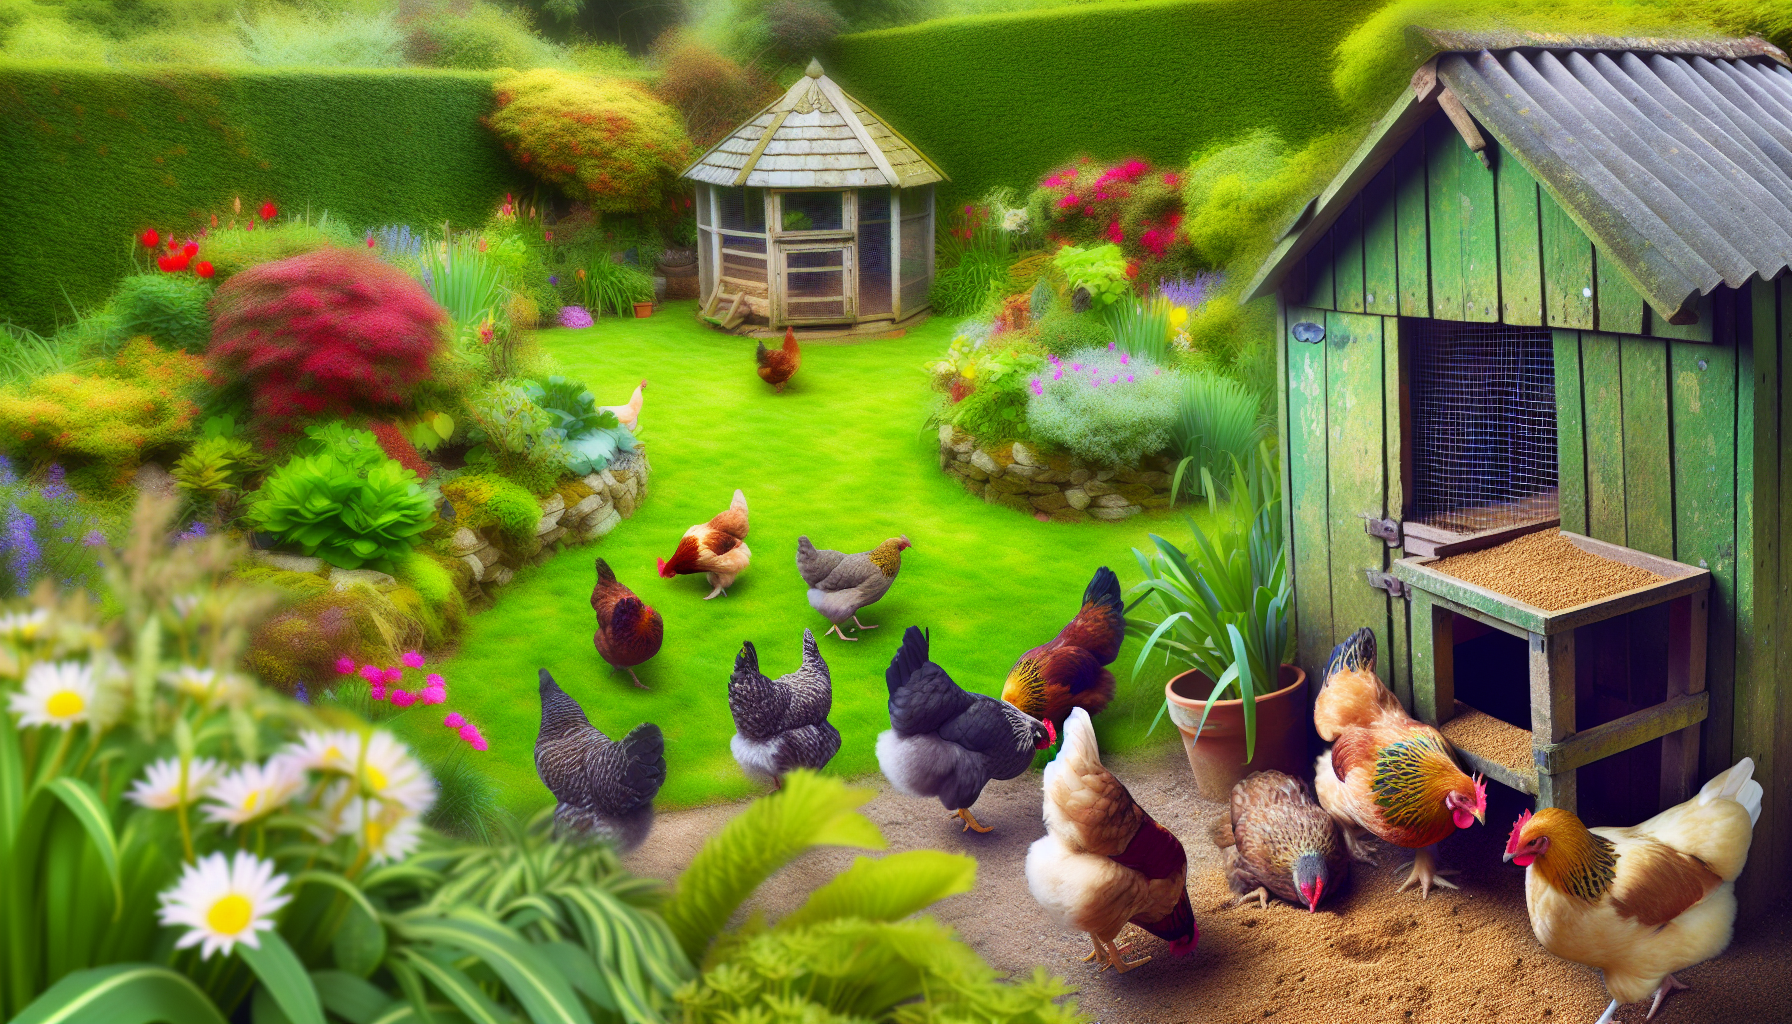 Potenzia il tuo gregge in giardino: i migliori consigli per nutrire i polli in modo biologico